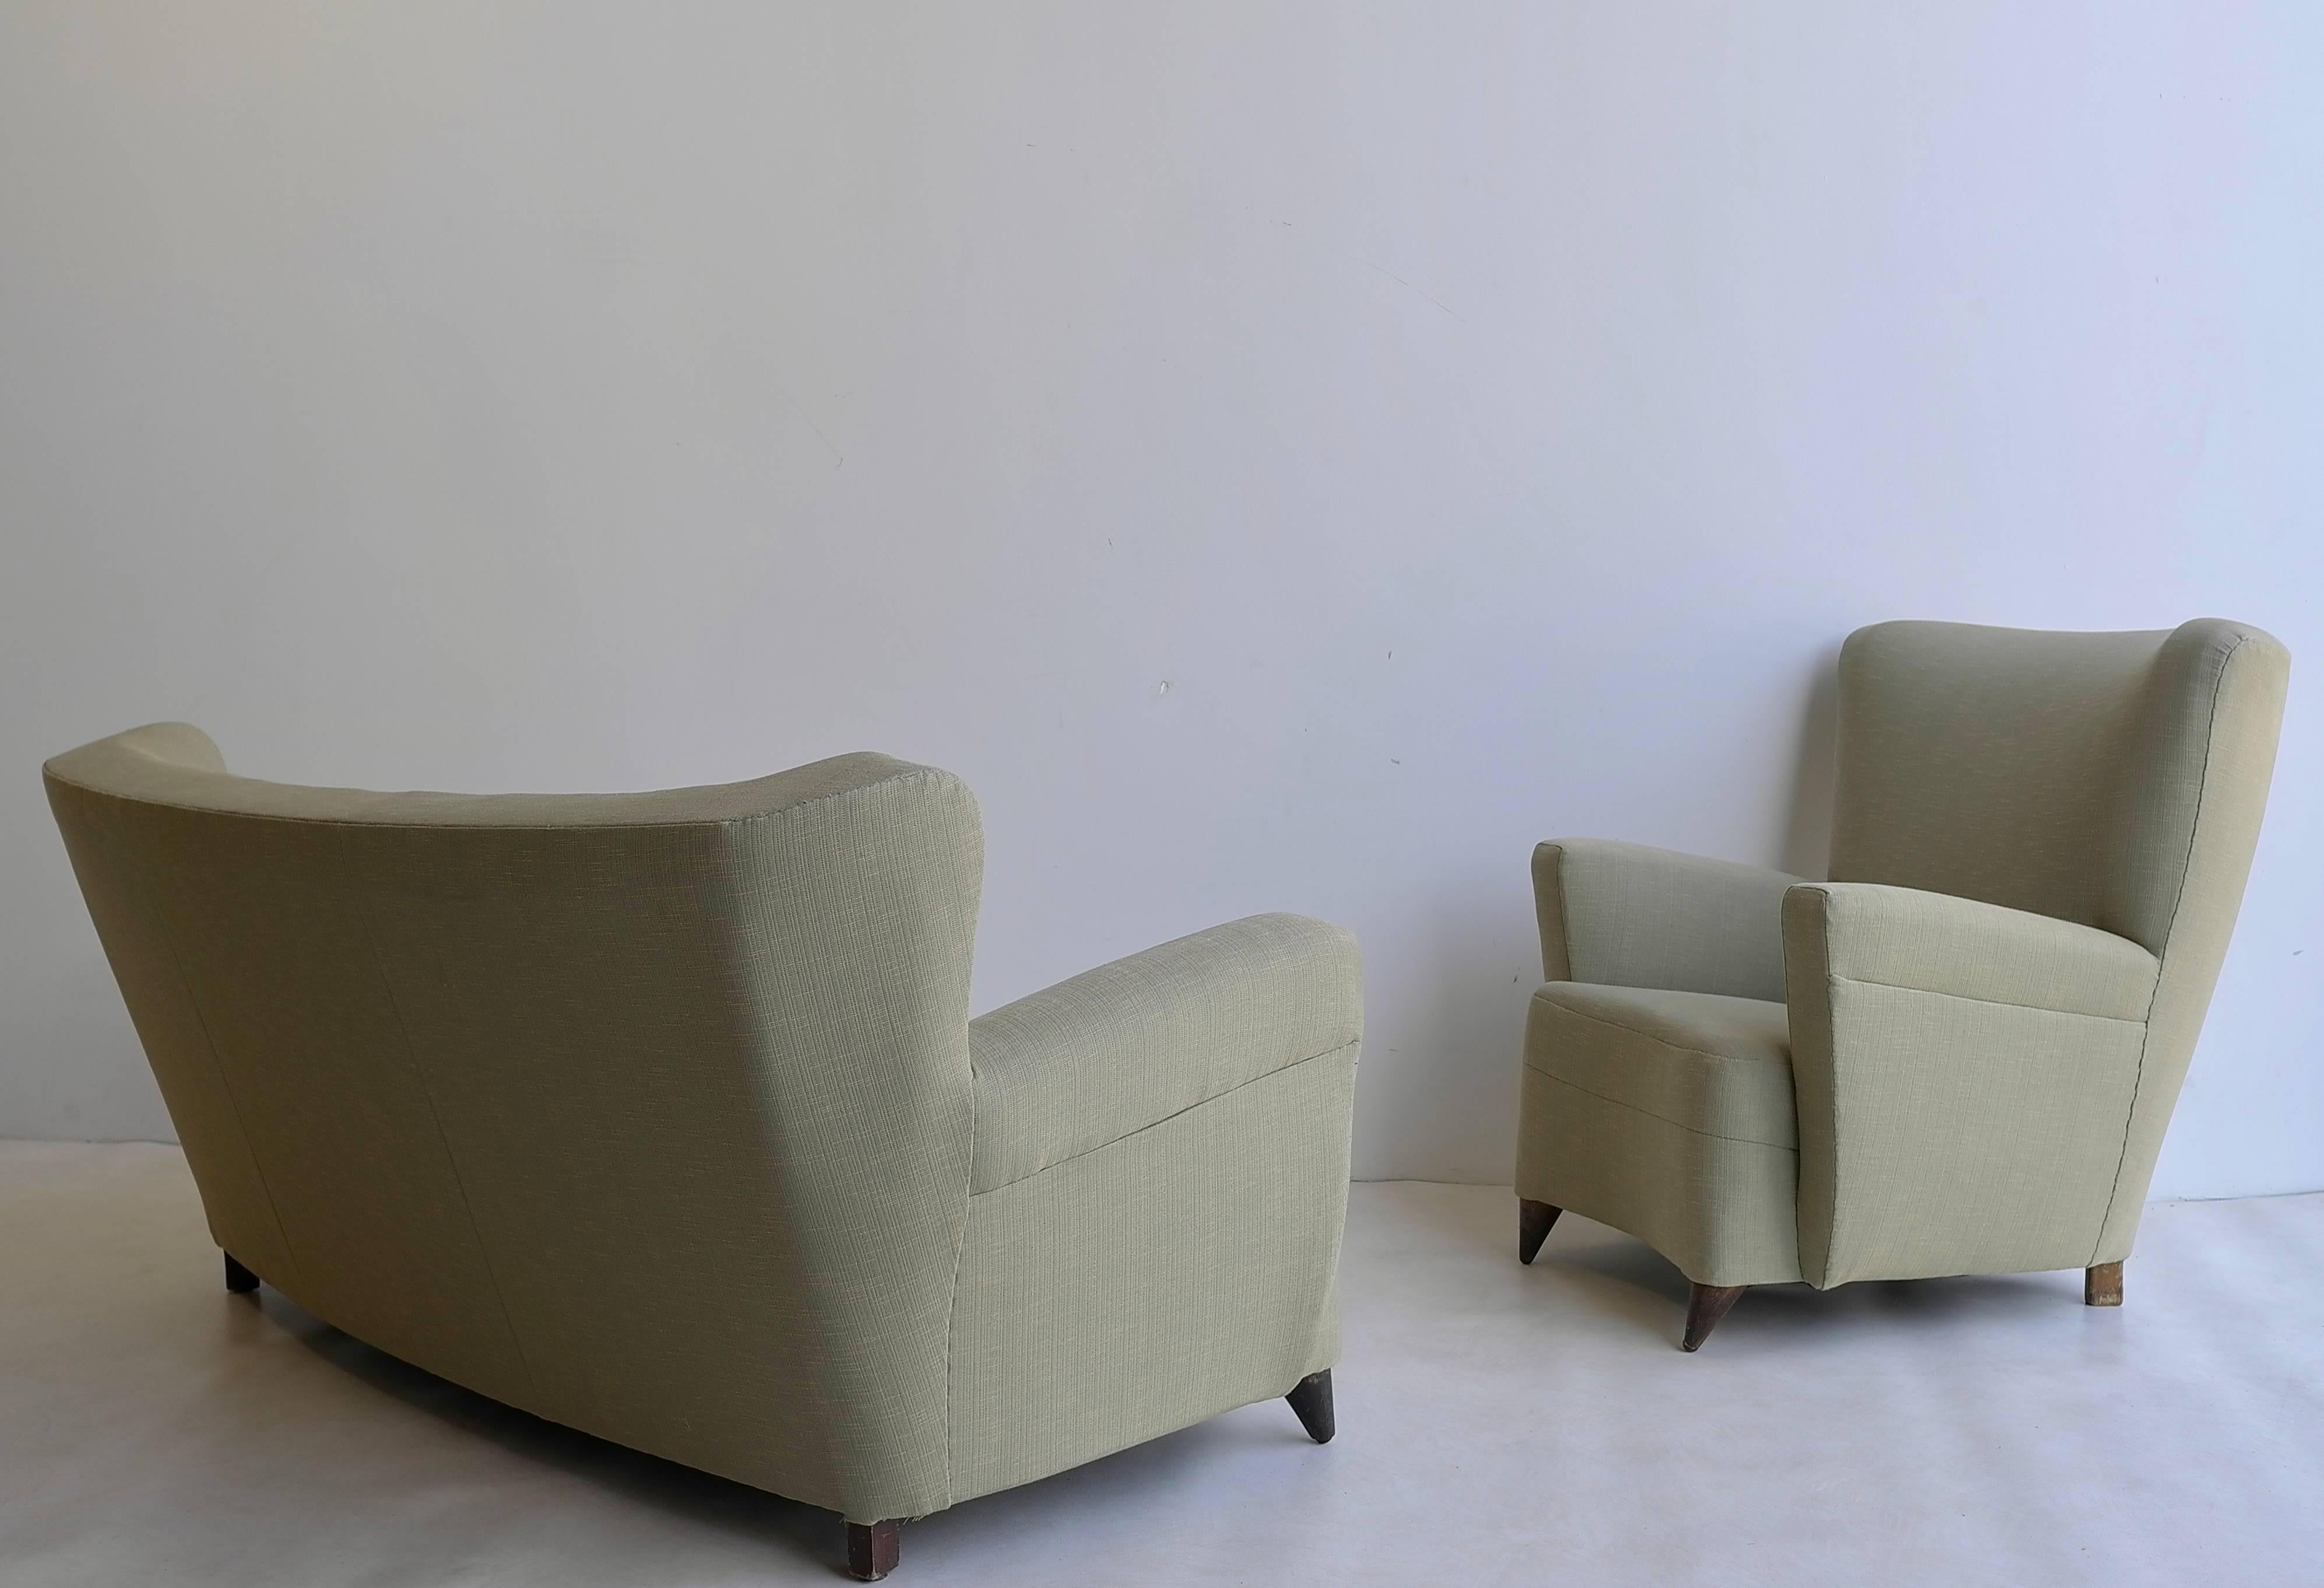 Green Italian three-seat Sofa set in style of Gio Ponti 1